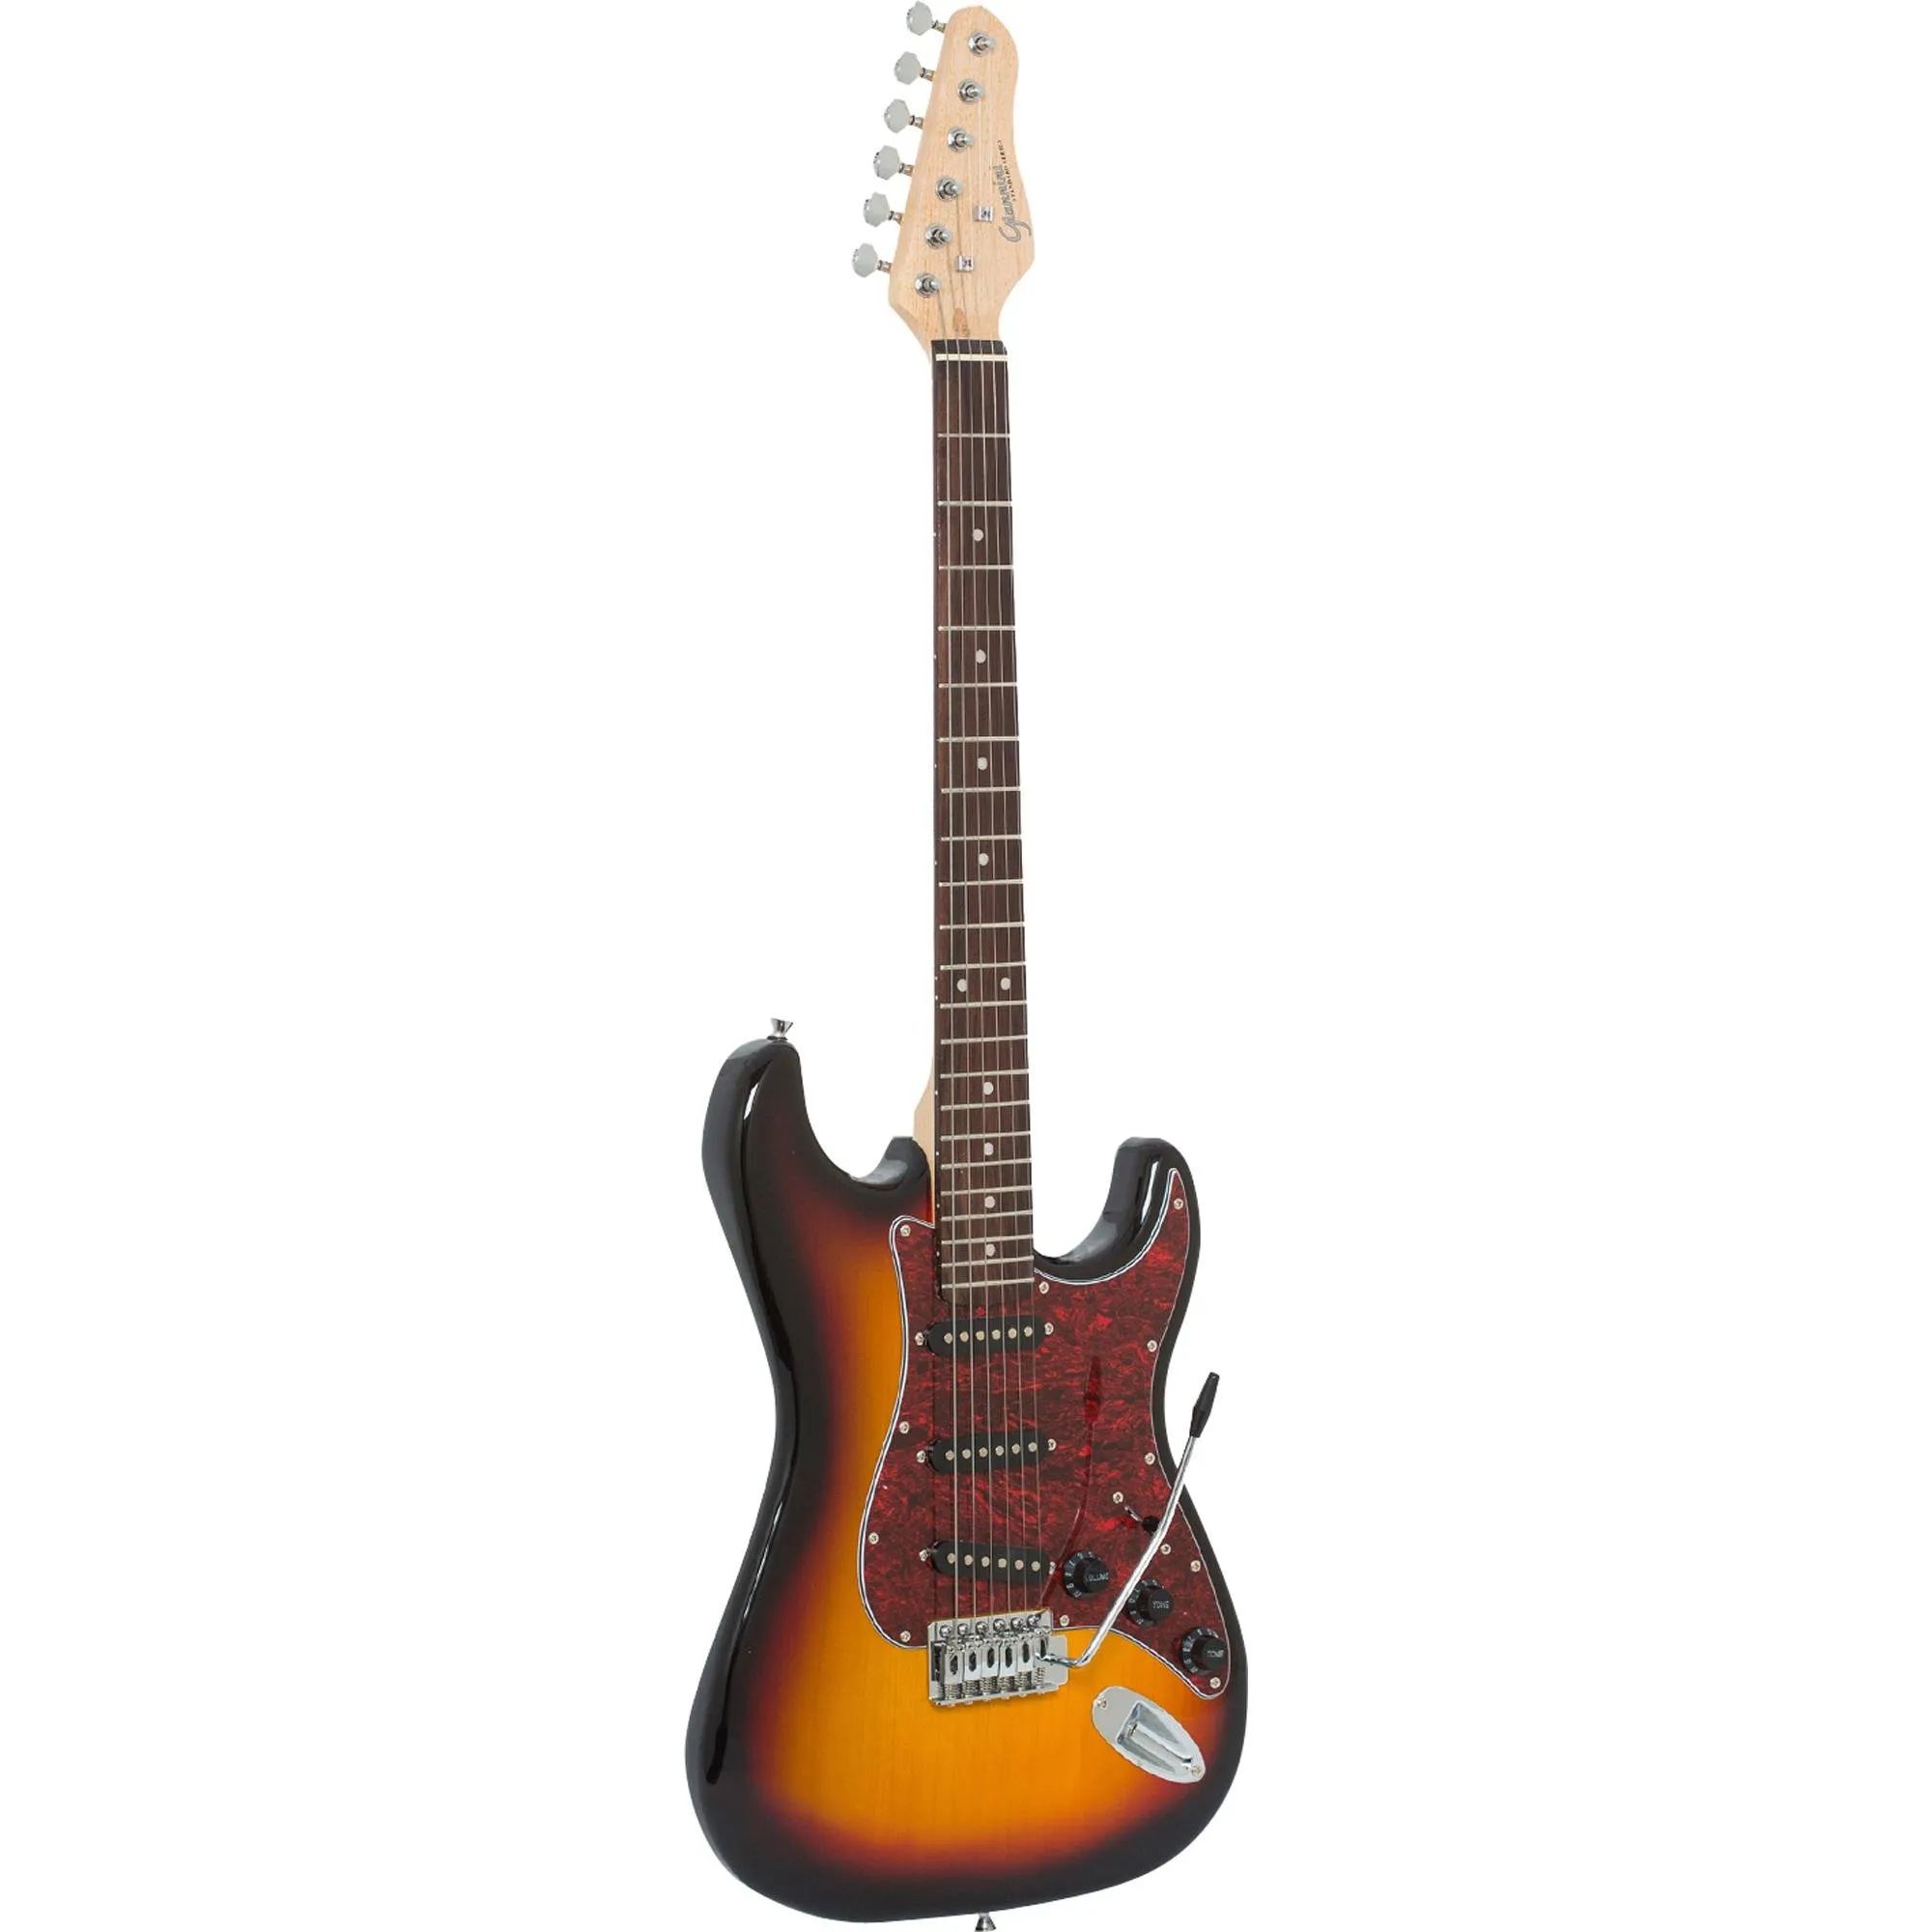 Guitarra Giannini G100 Sunburst Com Escudo Tortoise por 861,90 à vista no boleto/pix ou parcele em até 10x sem juros. Compre na loja Mundomax!